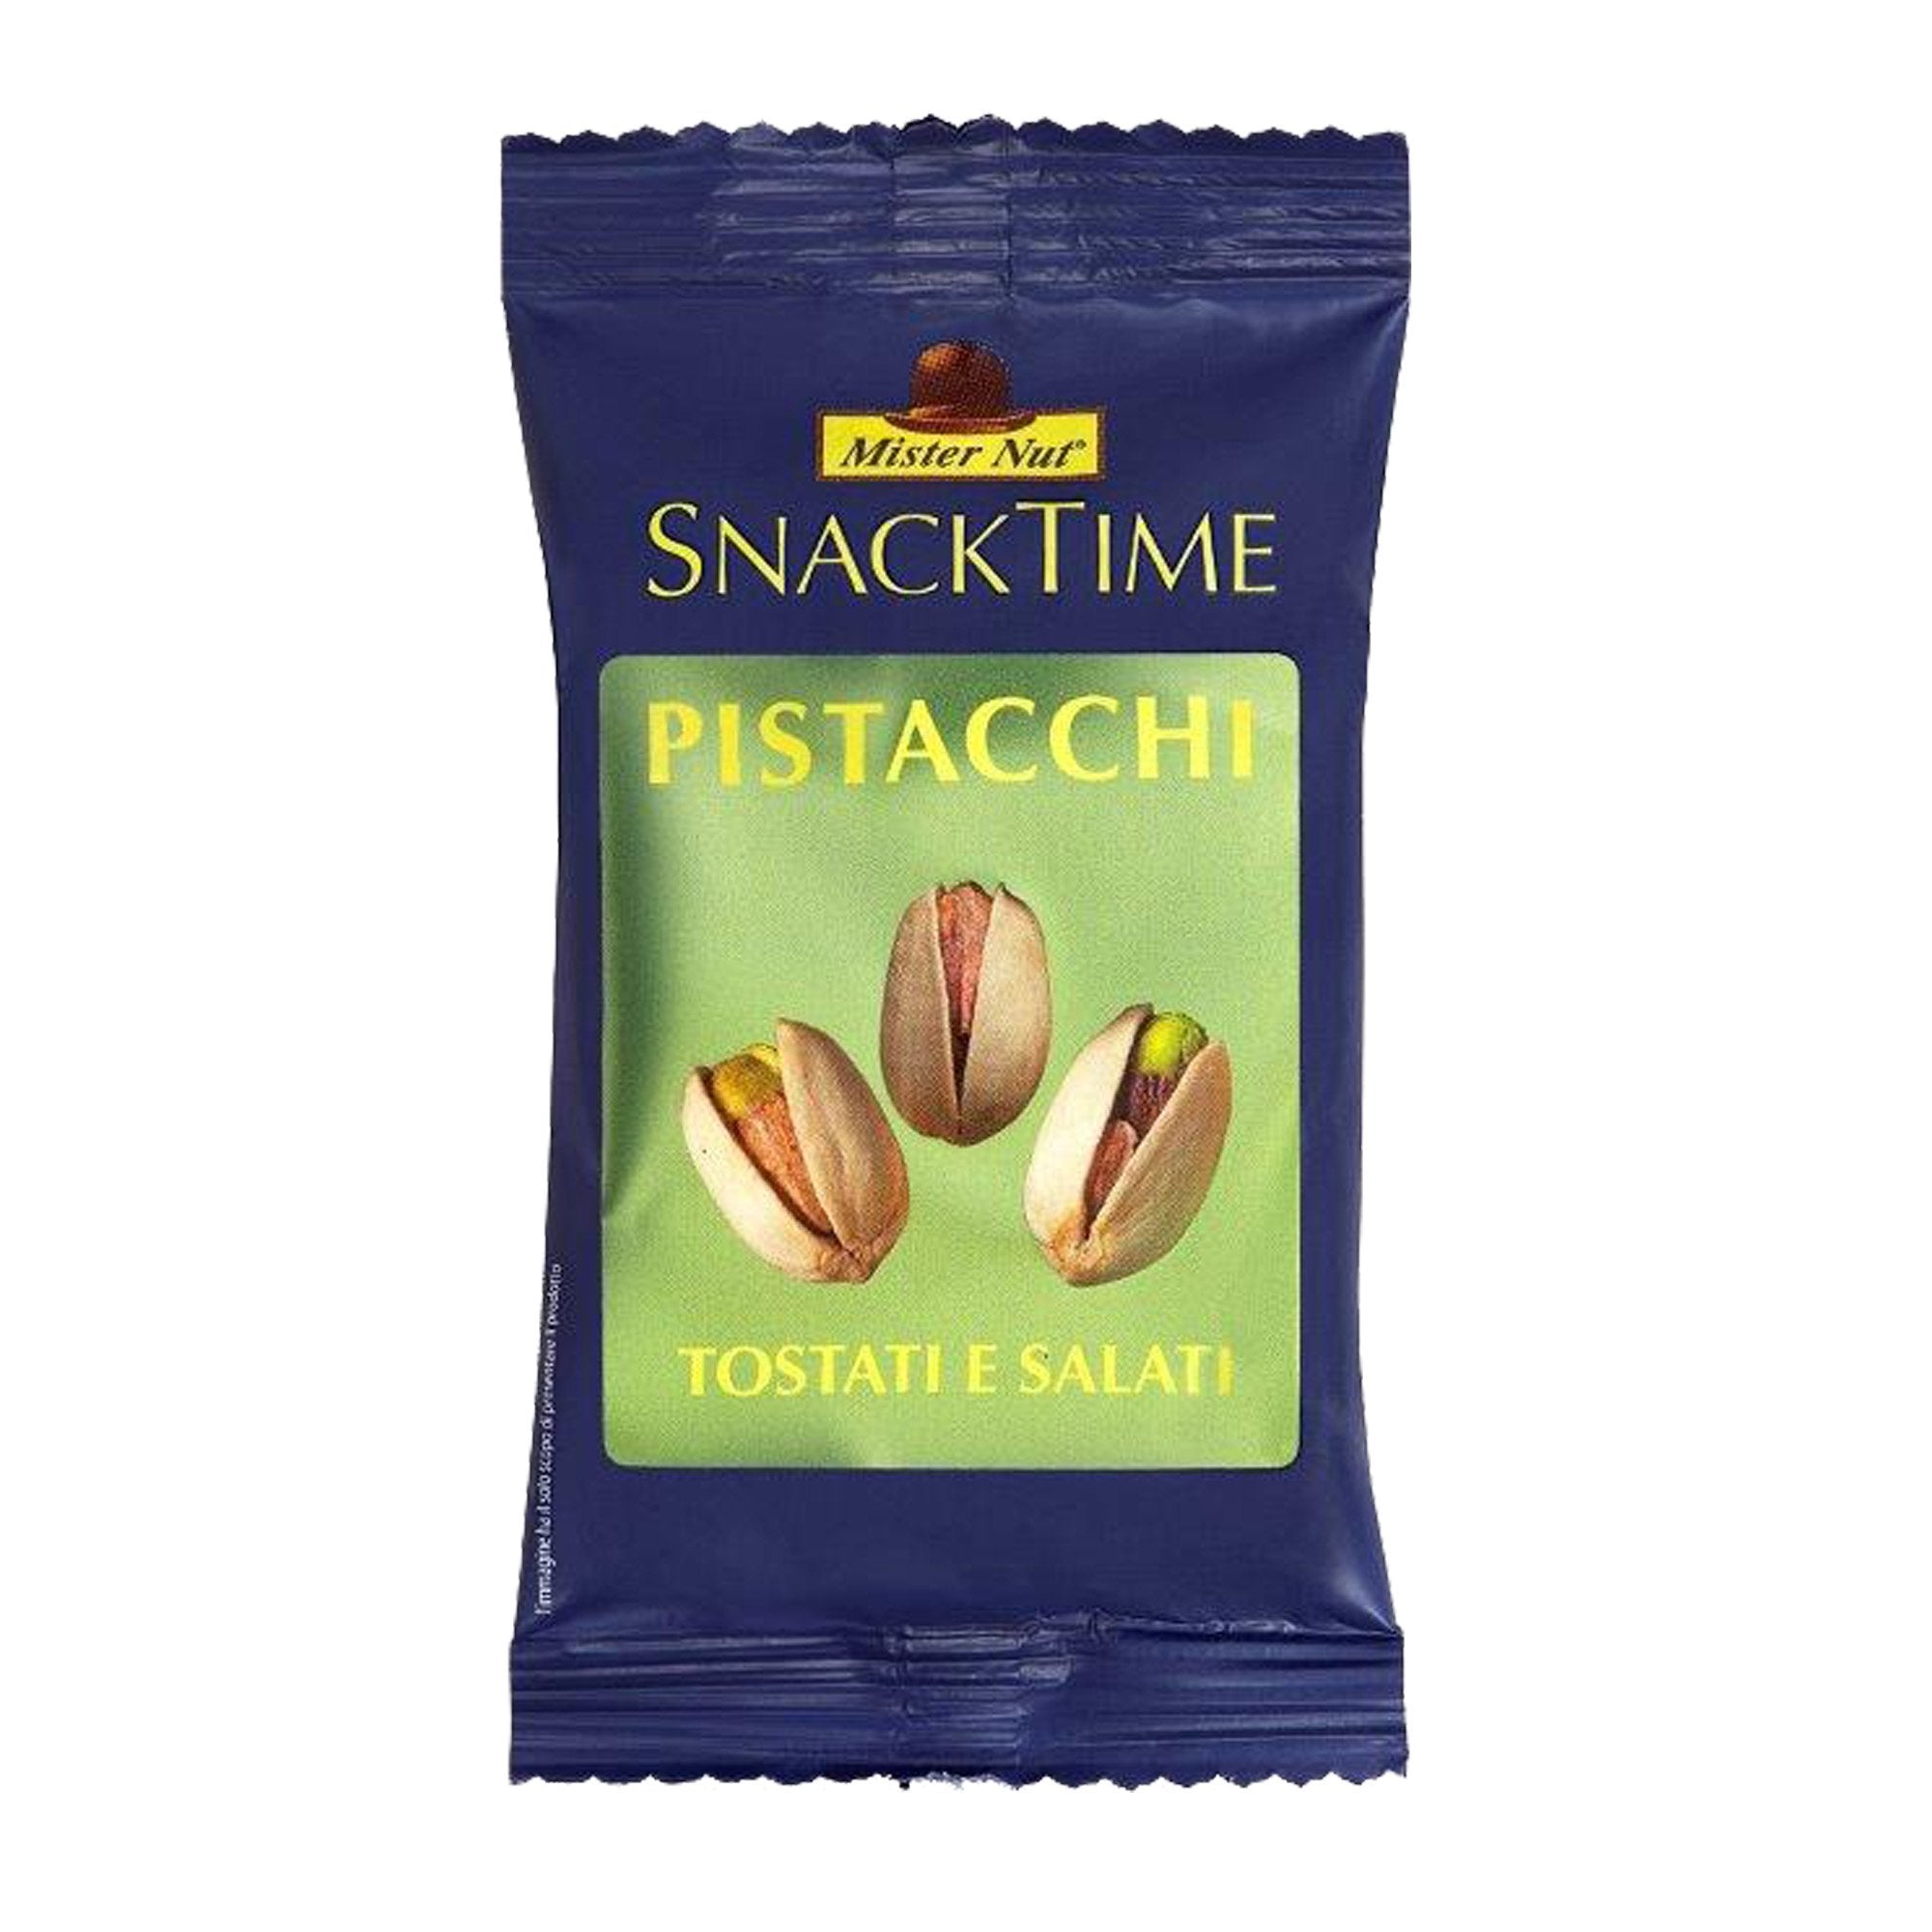 mister-nut-pistacchi-25gr-snack-time